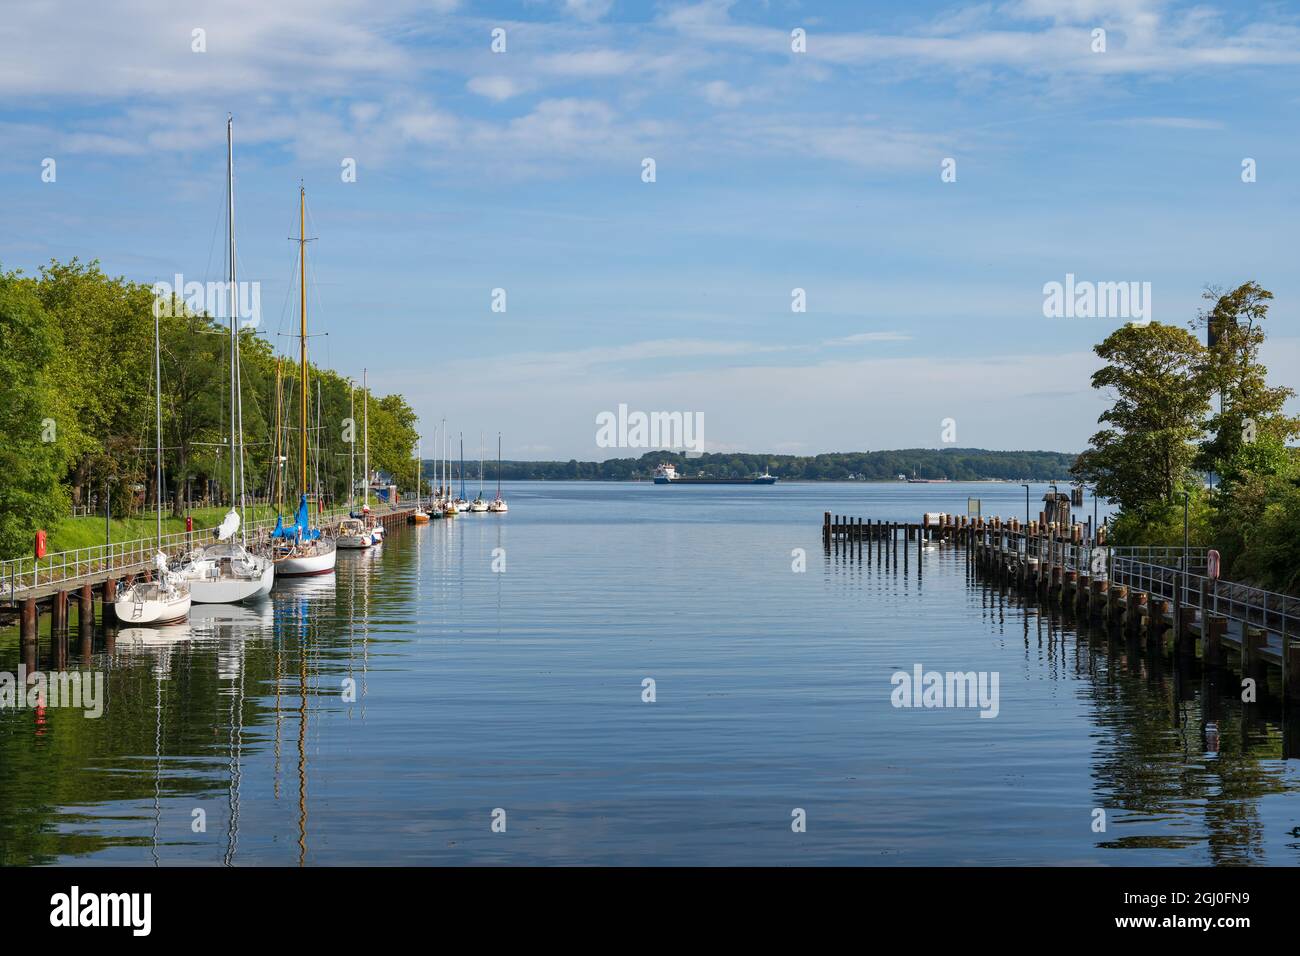 An einem Bootsteg an der Schleuse Holtenau haben Segelschiffe angelegt, bevor sie die passage durch den Nord-Ostsee-Kanal antreten Foto Stock